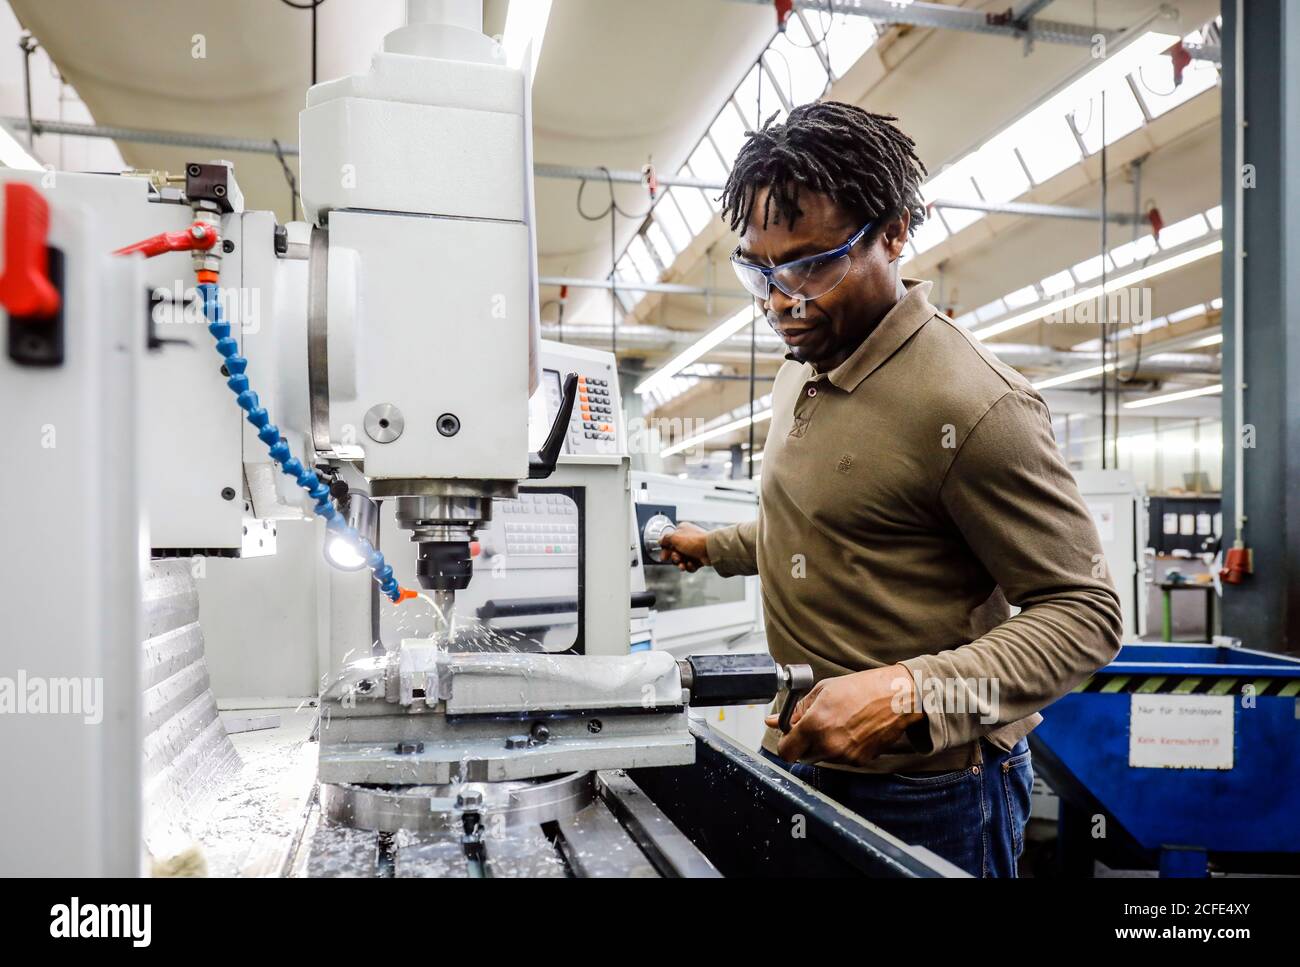 Remscheid, Rhénanie-du-Nord-Westphalie, Allemagne - apprentis dans les métiers de la métallurgie, ici dans une machine-outil, centre de formation professionnelle du Remscheid Banque D'Images